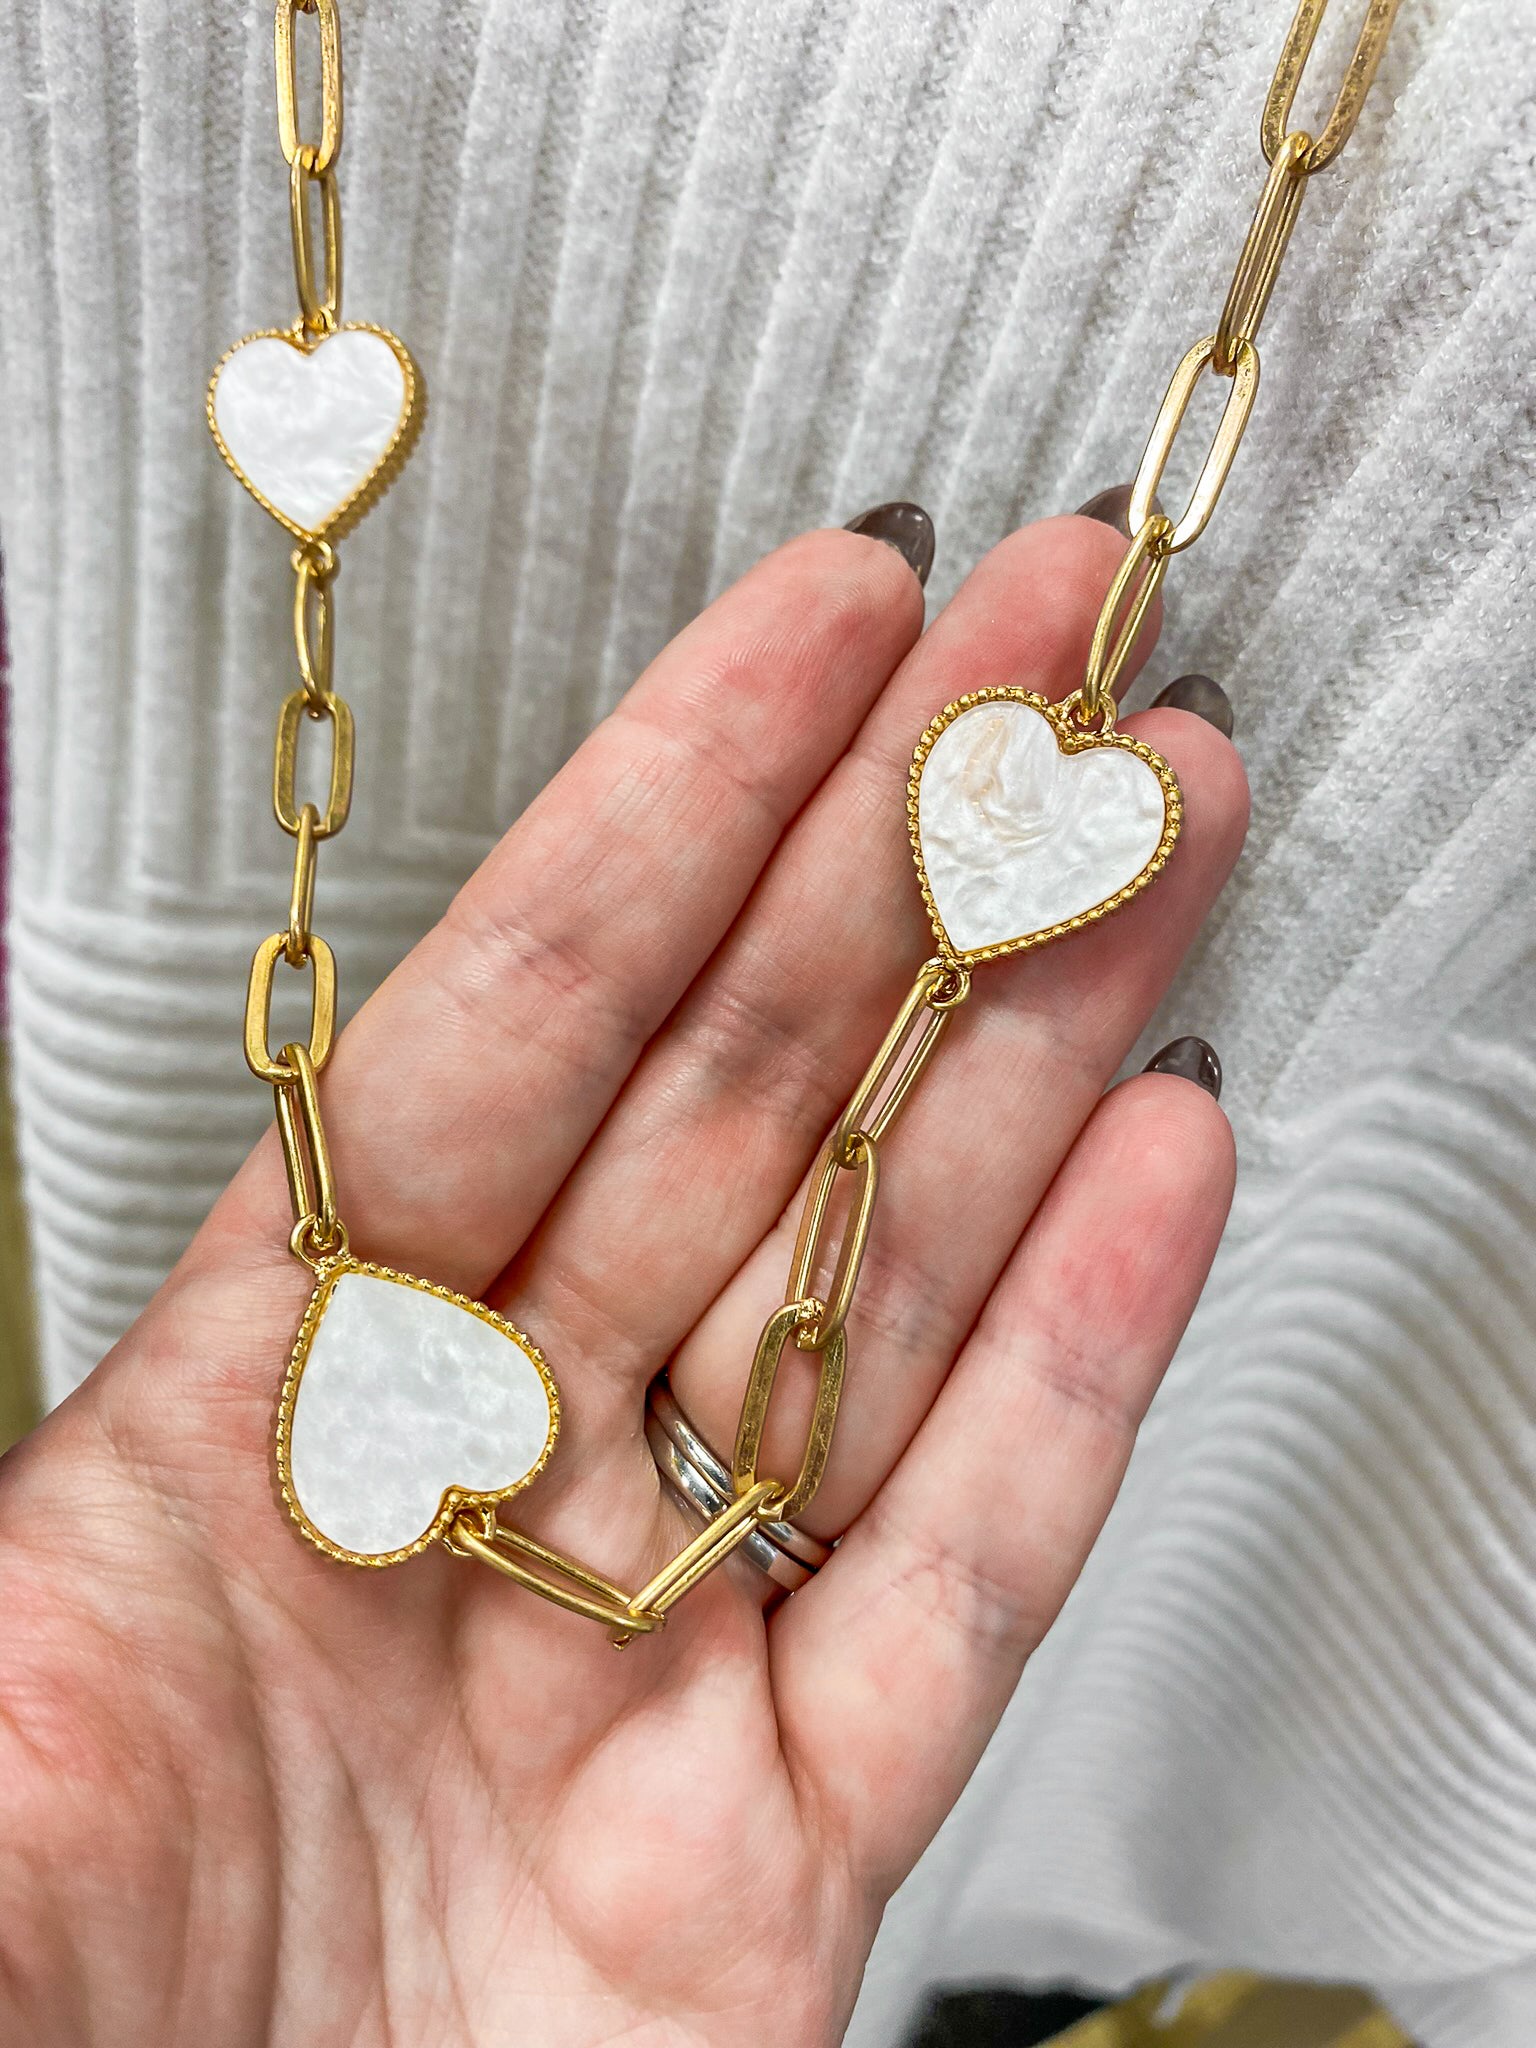 PAIGE Long Heart Necklace – shopstandingo